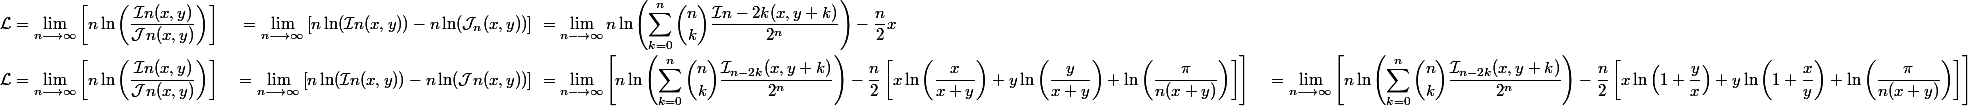 \begin{aligned}\mathcal{L} &= \lim\limits_{n \longrightarrow \infty} \left[n \ln\left(\dfrac{\mathcal{I}n(x, y)}{\mathcal{J}n(x, y)}\right)\right] \ &= \lim\limits_{n \longrightarrow \infty} \left[n \ln(\mathcal{I}n(x, y)) - n \ln(\mathcal{J}_n(x, y))\right] \ &= \lim\limits_{n \longrightarrow \infty} n \ln\left(\sum_{k=0}^n \dbinom{n}{k} \dfrac{\mathcal{I}{n-2k}(x, y + k)}{2^n}\right) - \dfrac{n}{2}x \\ \mathcal{L} &= \lim\limits_{n \longrightarrow \infty} \left[n \ln\left(\dfrac{\mathcal{I}n(x, y)}{\mathcal{J}n(x, y)}\right)\right] \ &= \lim\limits_{n \longrightarrow \infty} \left[n \ln(\mathcal{I}n(x, y)) - n \ln(\mathcal{J}n(x, y))\right] \ &= \lim\limits_{n \longrightarrow \infty} \left[n \ln\left(\sum_{k=0}^n \dbinom{n}{k} \dfrac{\mathcal{I}_{n-2k}(x, y + k)}{2^n}\right) - \dfrac{n}{2}\left[x\ln\left(\dfrac{x}{x + y}\right) + y\ln\left(\dfrac{y}{x + y}\right) + \ln\left(\dfrac{\pi}{n(x + y)}\right)\right]\right] \ &= \lim\limits_{n \longrightarrow \infty} \left[n \ln\left(\sum_{k=0}^n \dbinom{n}{k} \dfrac{\mathcal{I}_{n-2k}(x, y + k)}{2^n}\right) - \dfrac{n}{2}\left[x\ln\left(1 + \dfrac{y}{x}\right) + y\ln\left(1 + \dfrac{x}{y}\right) + \ln\left(\dfrac{\pi}{n(x + y)}\right)\right]\right]\end{aligned}